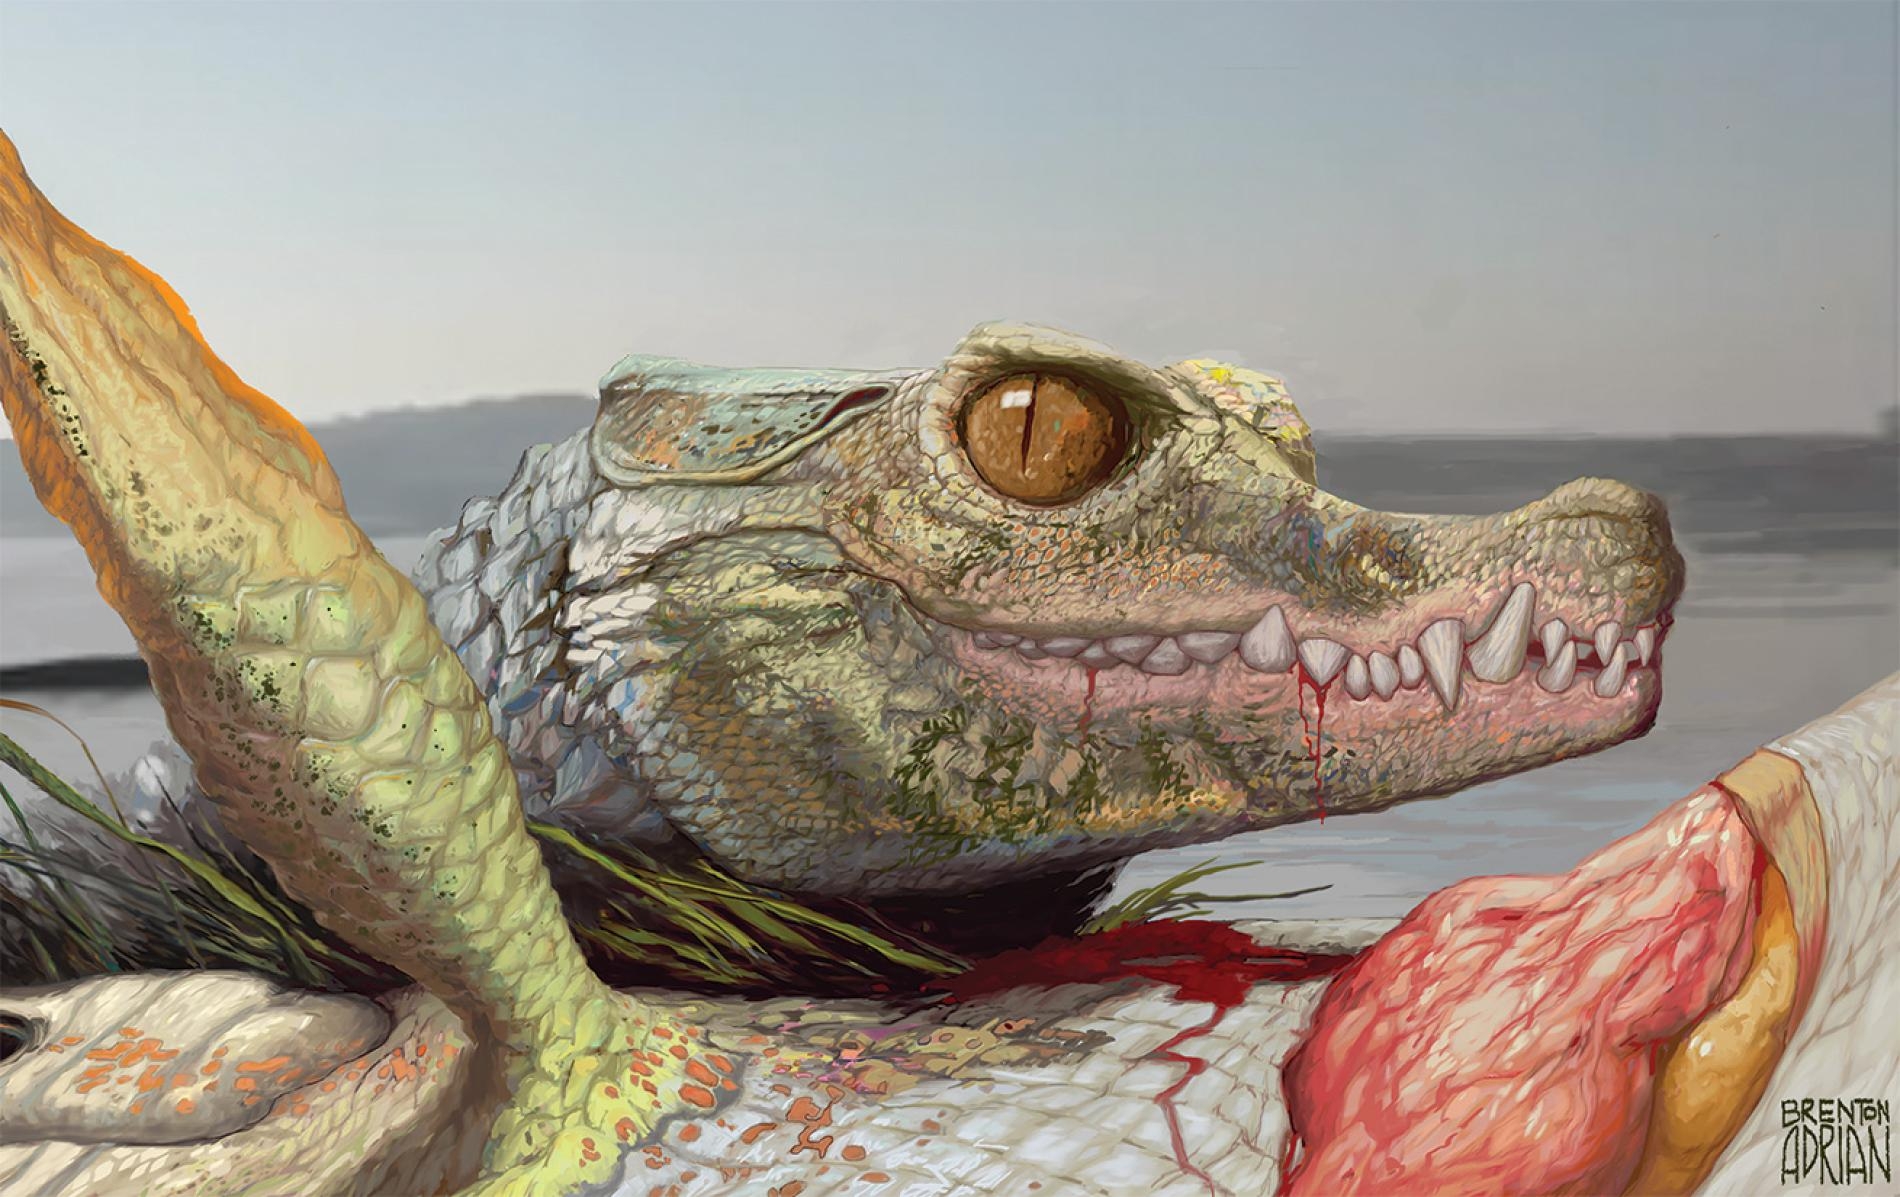 9600萬年前，在現今美國德州阿靈頓市（Arlington）遼闊的河口三角洲內住了一種名叫<i>Scolomastax sahlsteini</i>的動物，牠是現代鱷魚的小型親戚。這幅重建圖畫出這種史前爬蟲類正在吃一隻肺魚的殘骸。ILLUSTRATION BY BRENTON ADRIAN